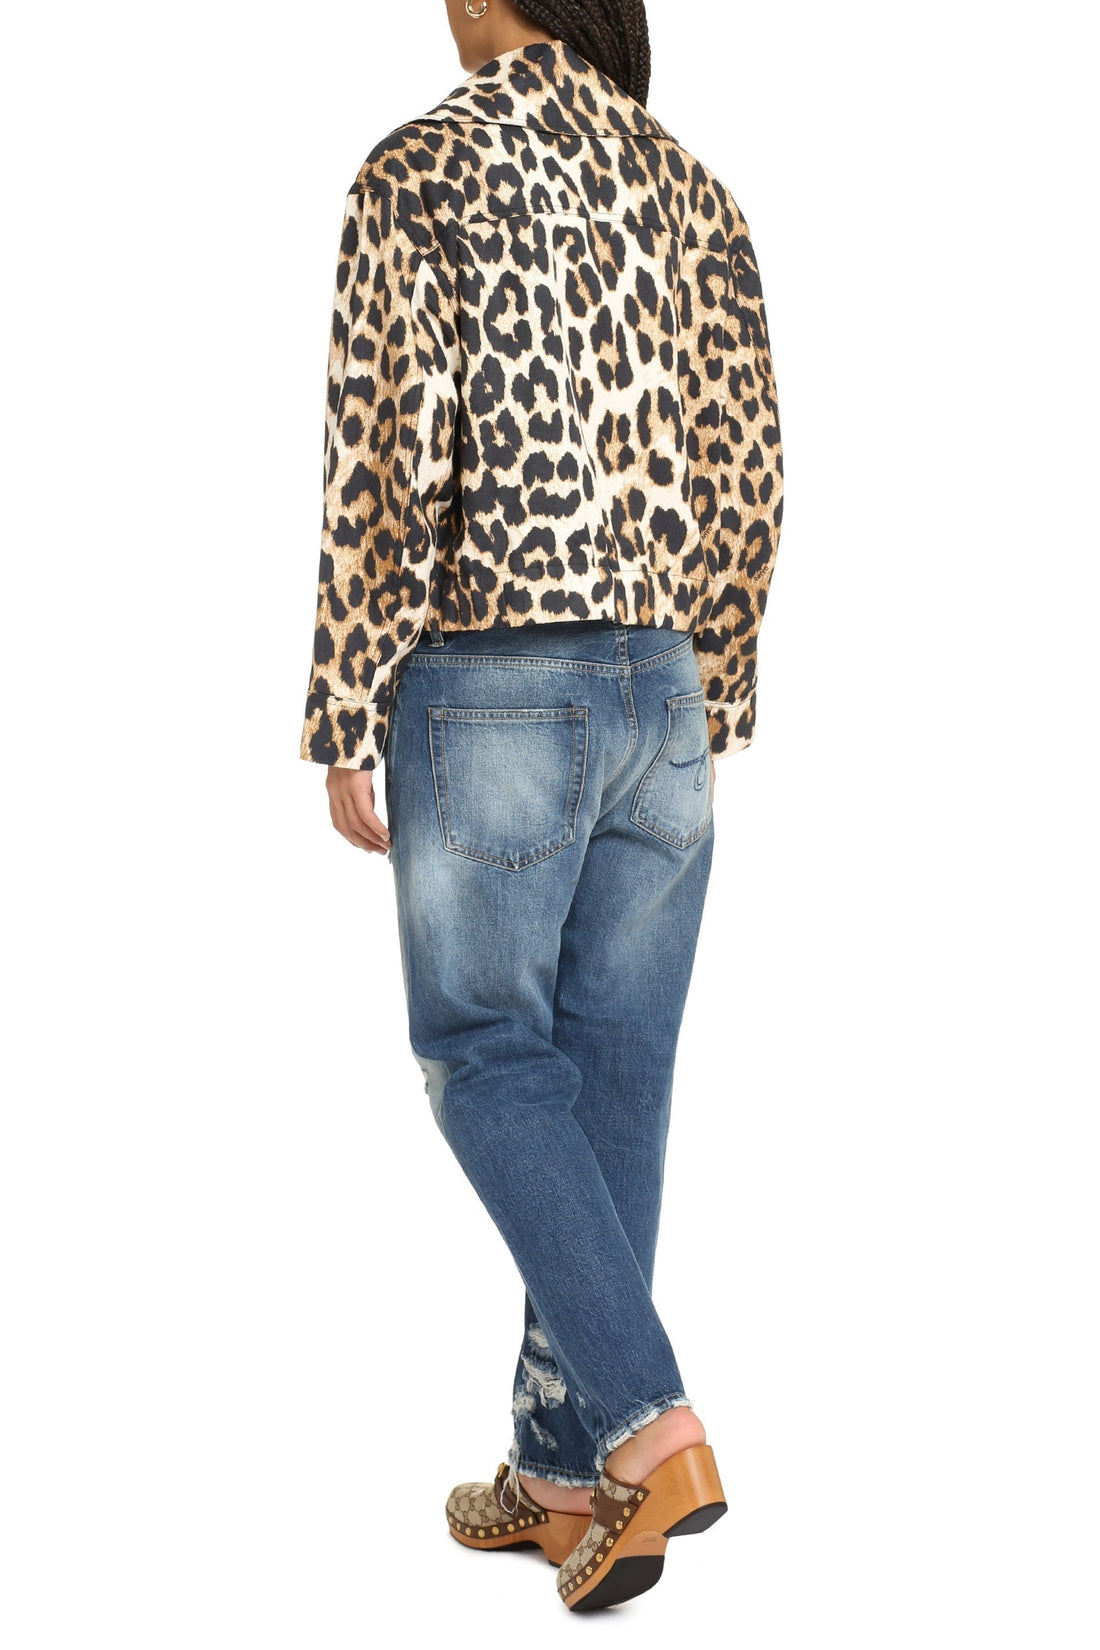 GANNI-OUTLET-SALE-Leopard print short jacket-ARCHIVIST